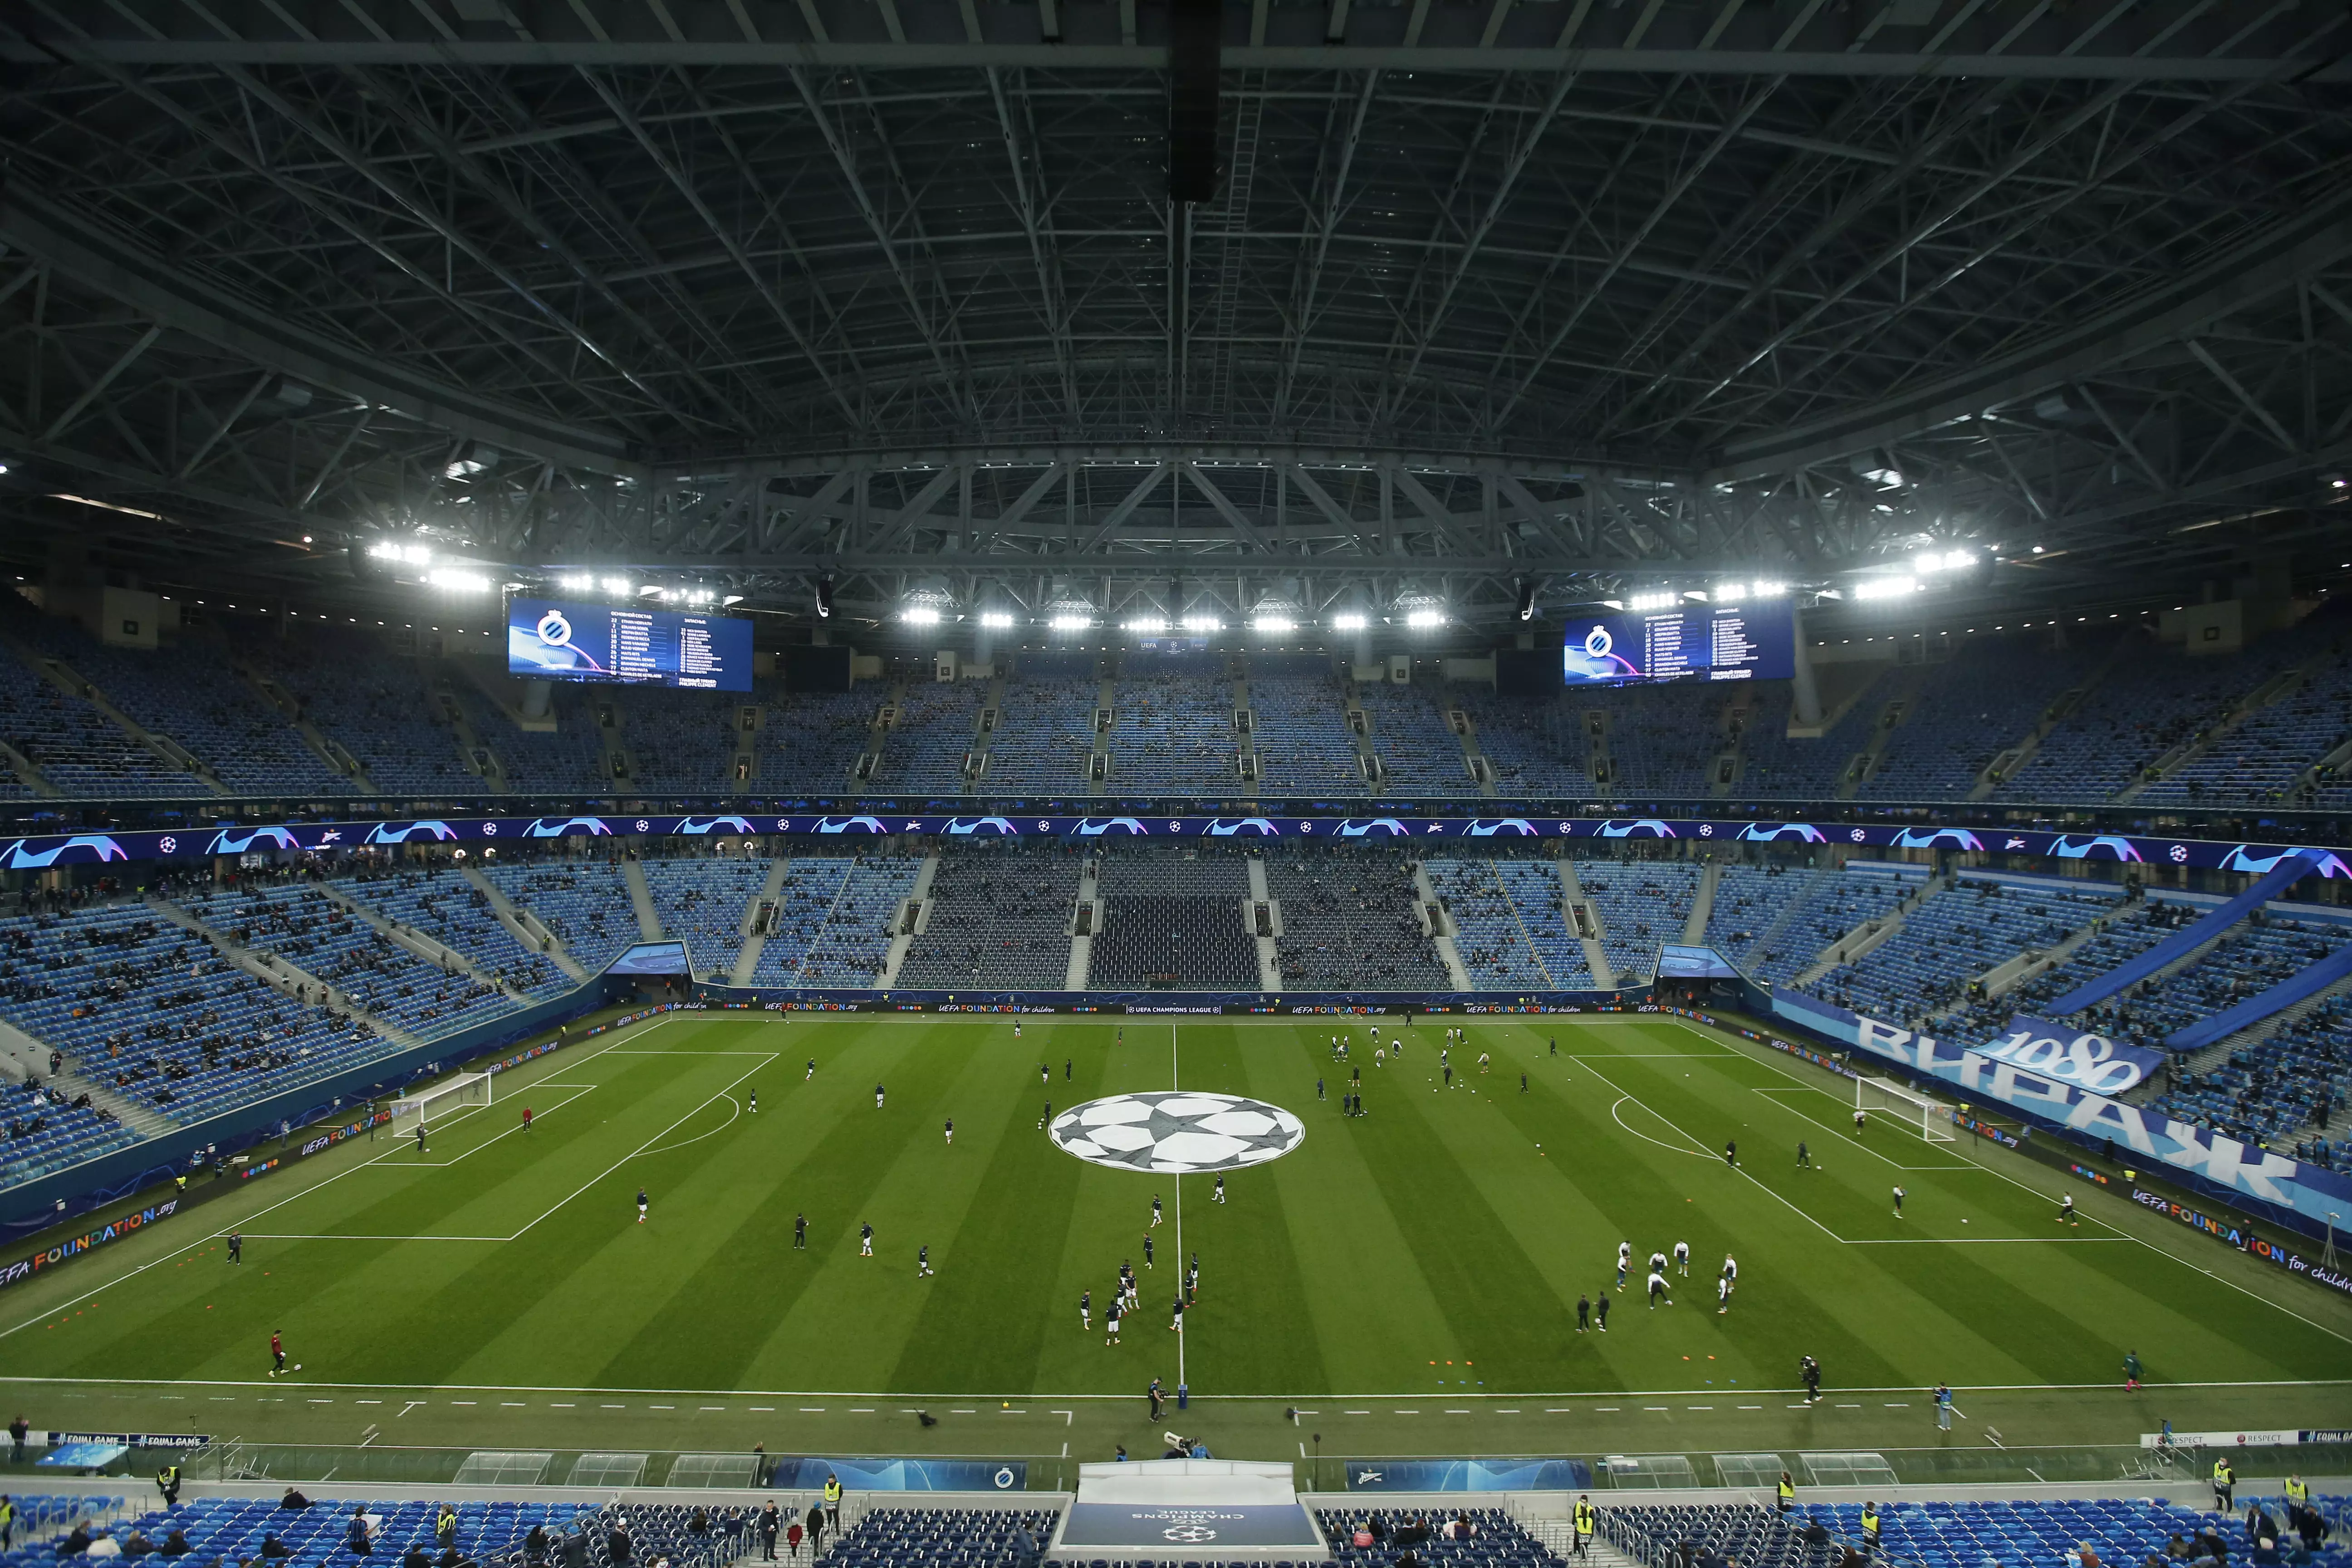 Стадион "Крестовский" в Санкт-Петербурге